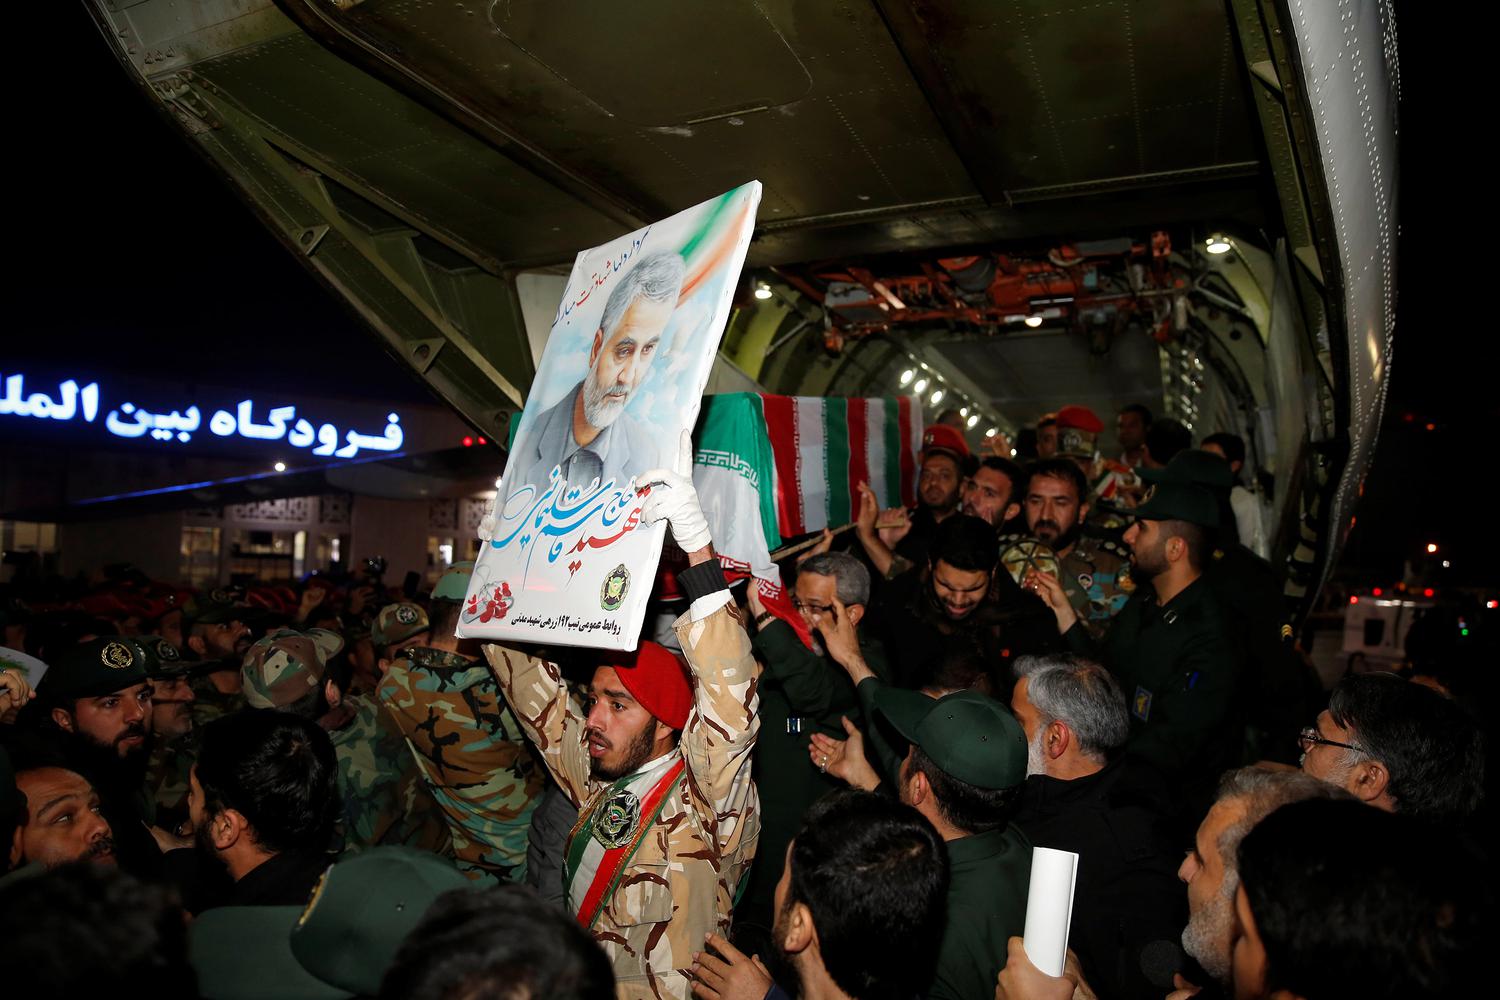 AWW Warga Iran mengangkat peti jenazah Mayor Jenderal Qassem Soleimani, kepala Pasukan elit Quds, yang tewas dalam serangan udara di bandara Baghdad, di bandara internasional Ahvaz, di Ahvaz, Iran, Minggu (5/1/2020).